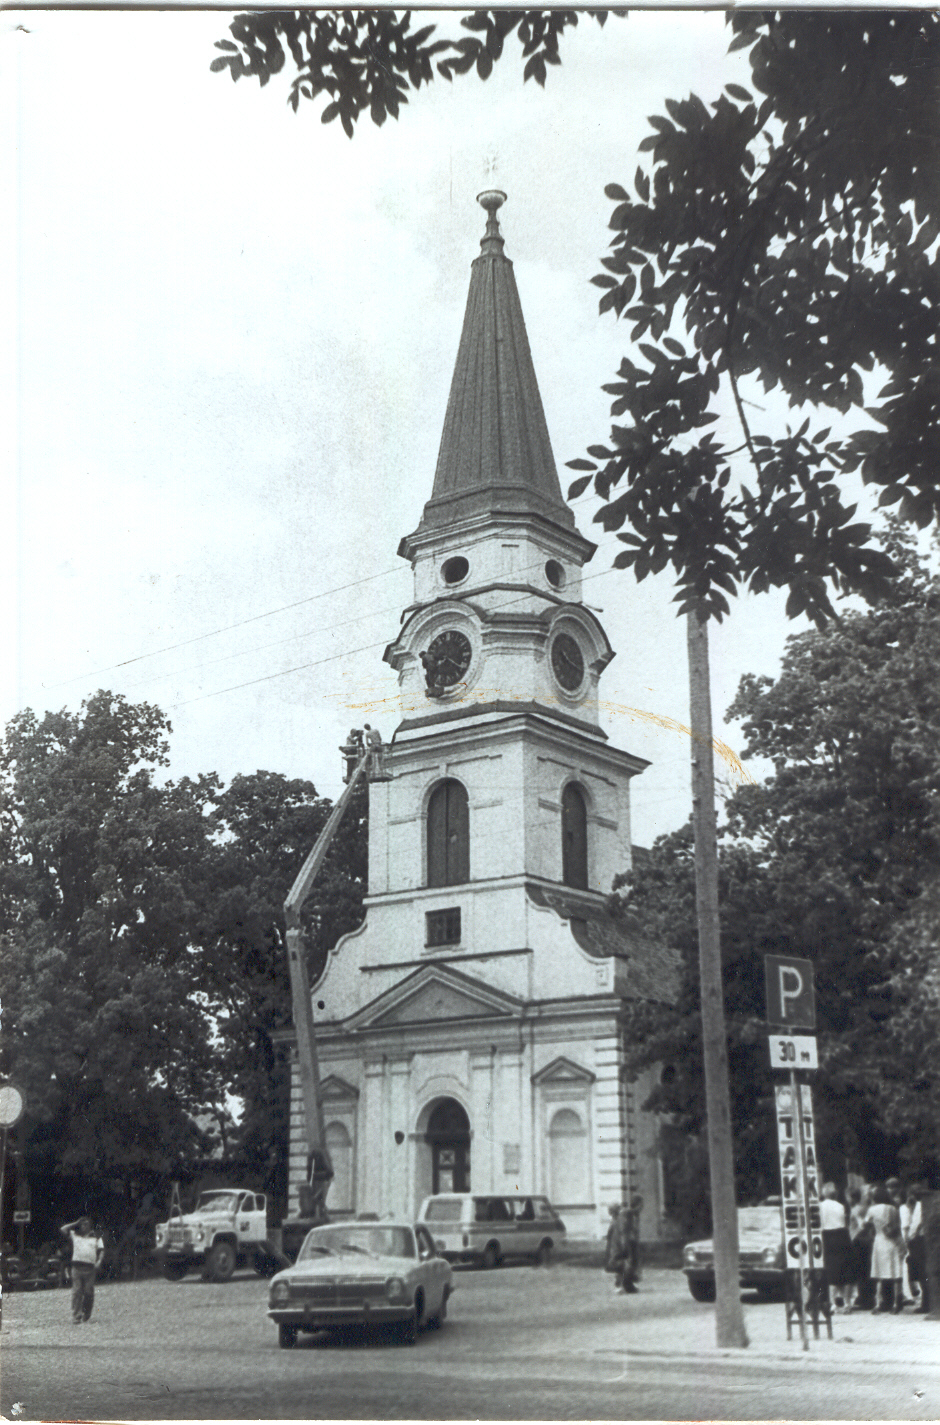 Foto Võru Katariina kiriku kella remont 1983.a. kevadel.